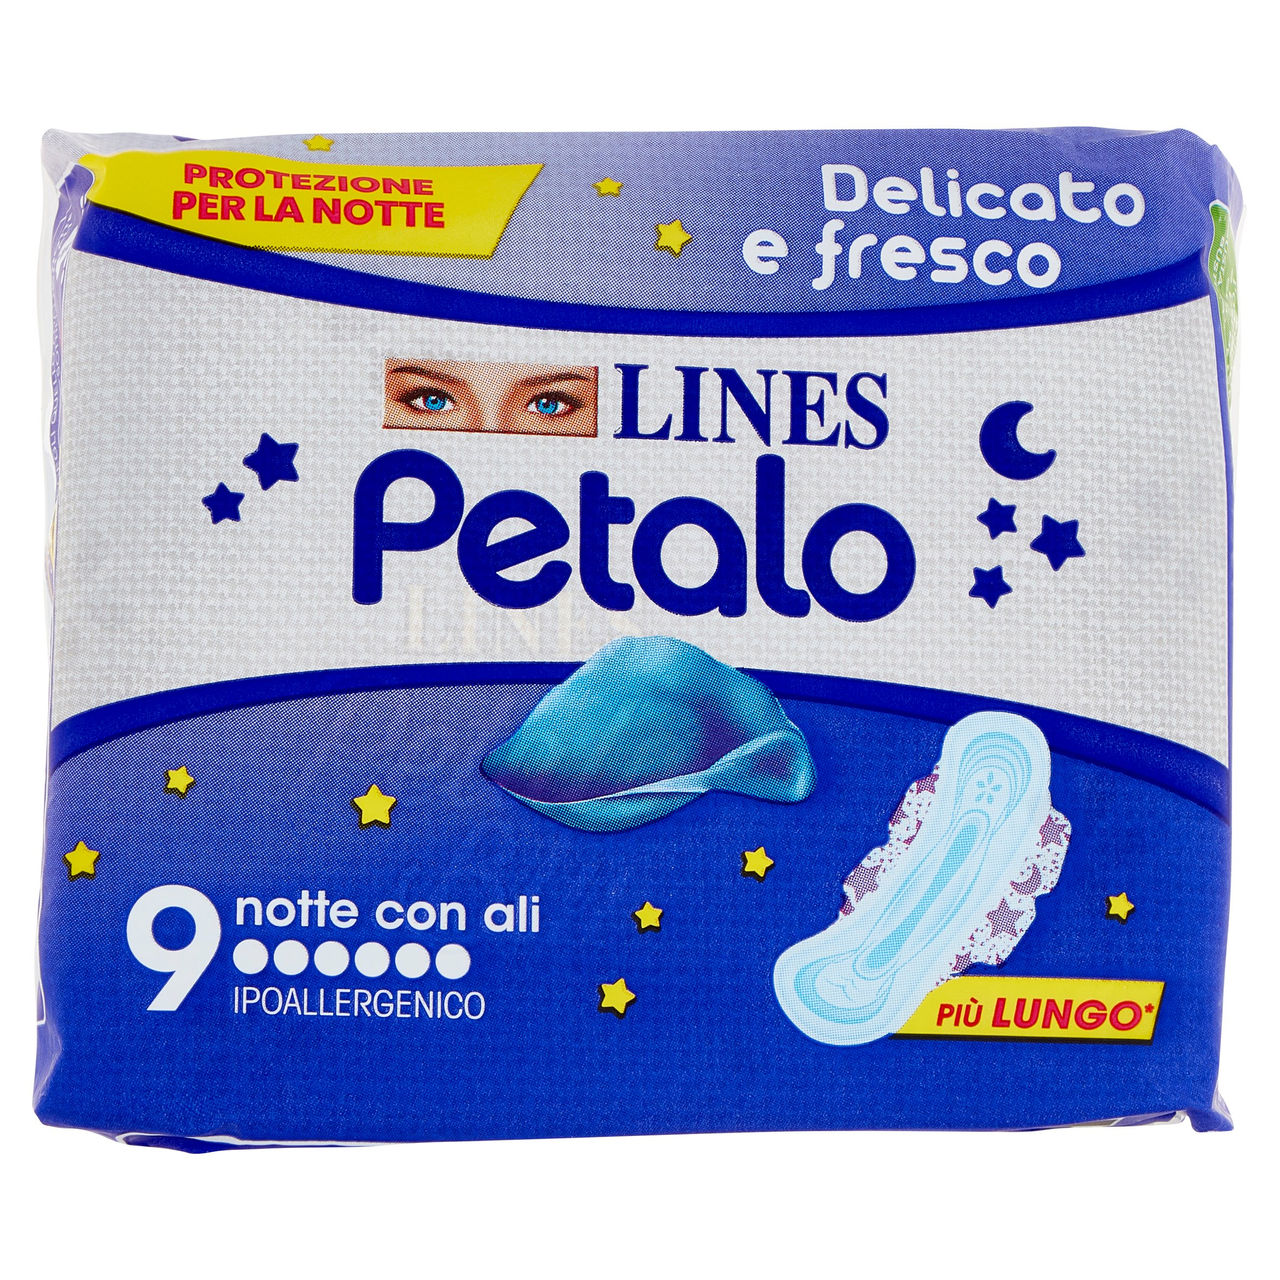 Lines Petalo notte con ali x 9 in vendita online